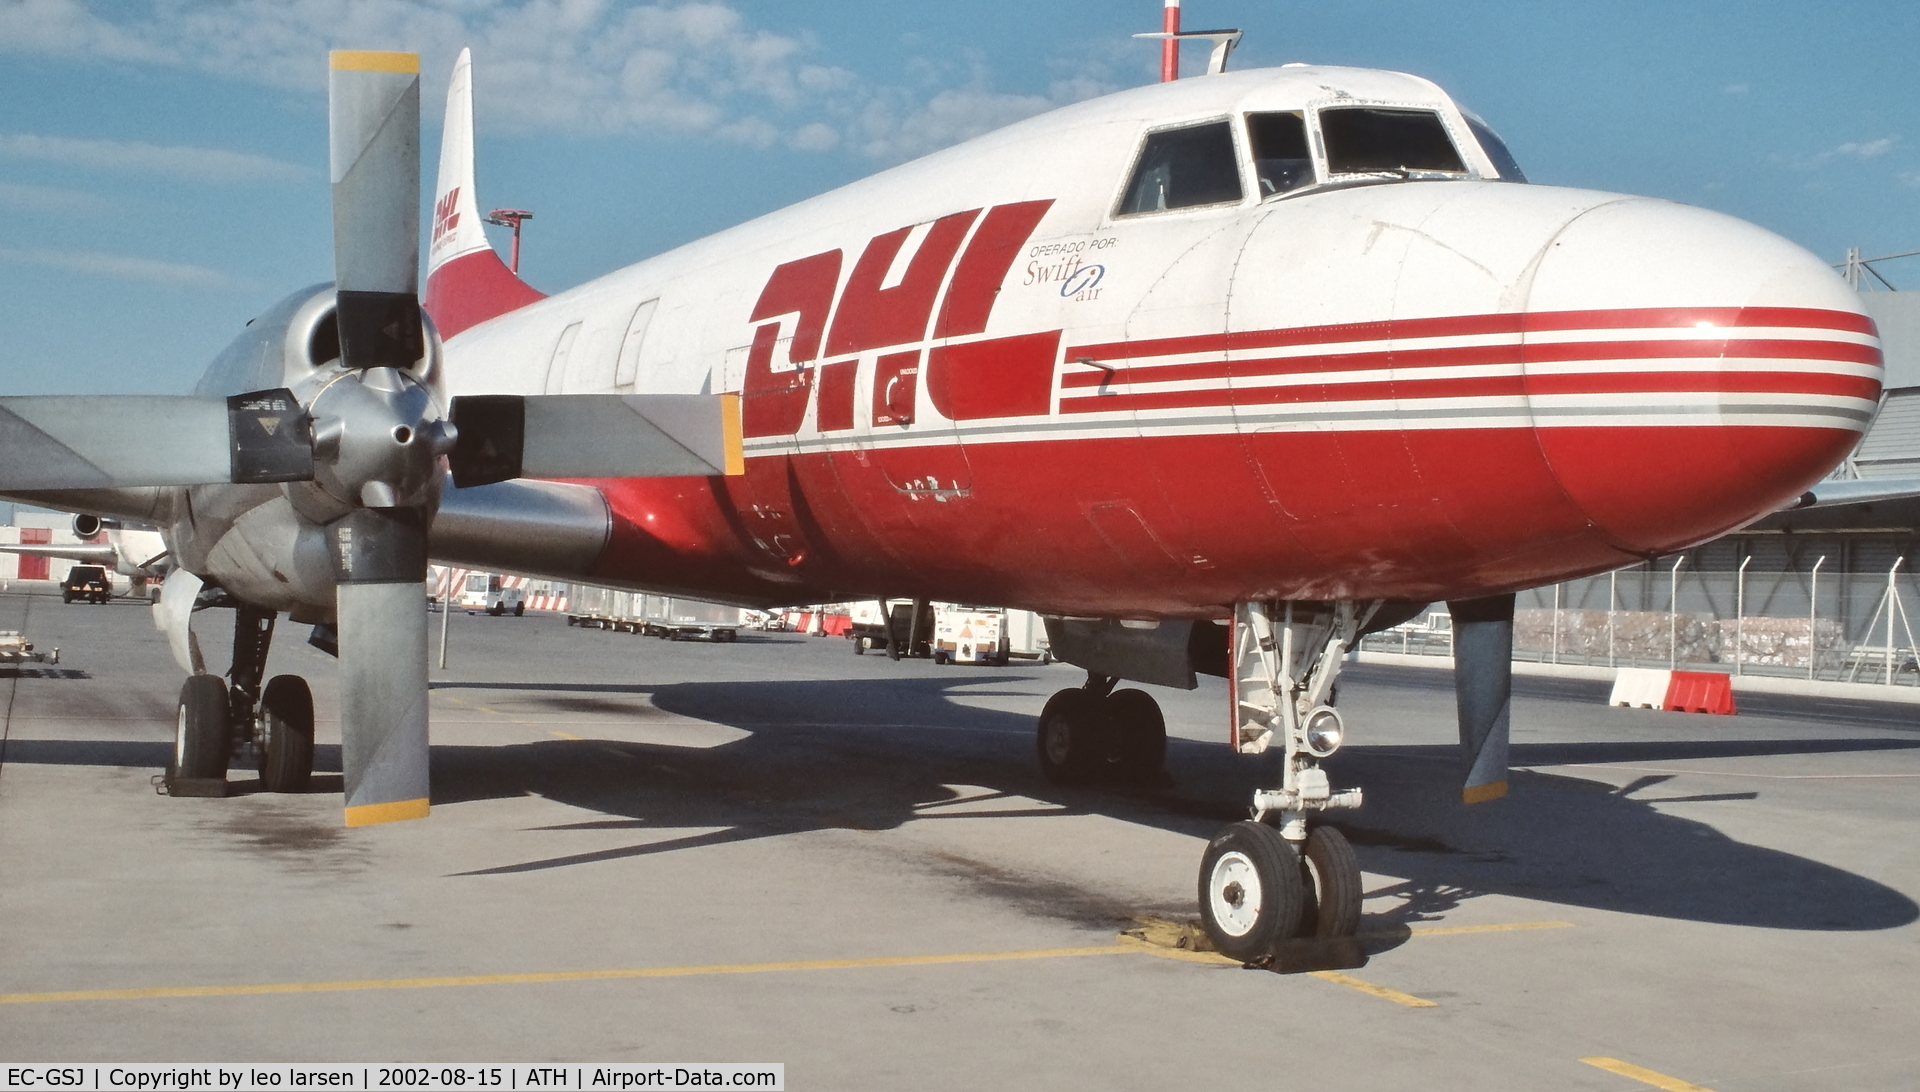 EC-GSJ, 1954 Convair 580(F) C/N 130/072, Athens 15.8.2002